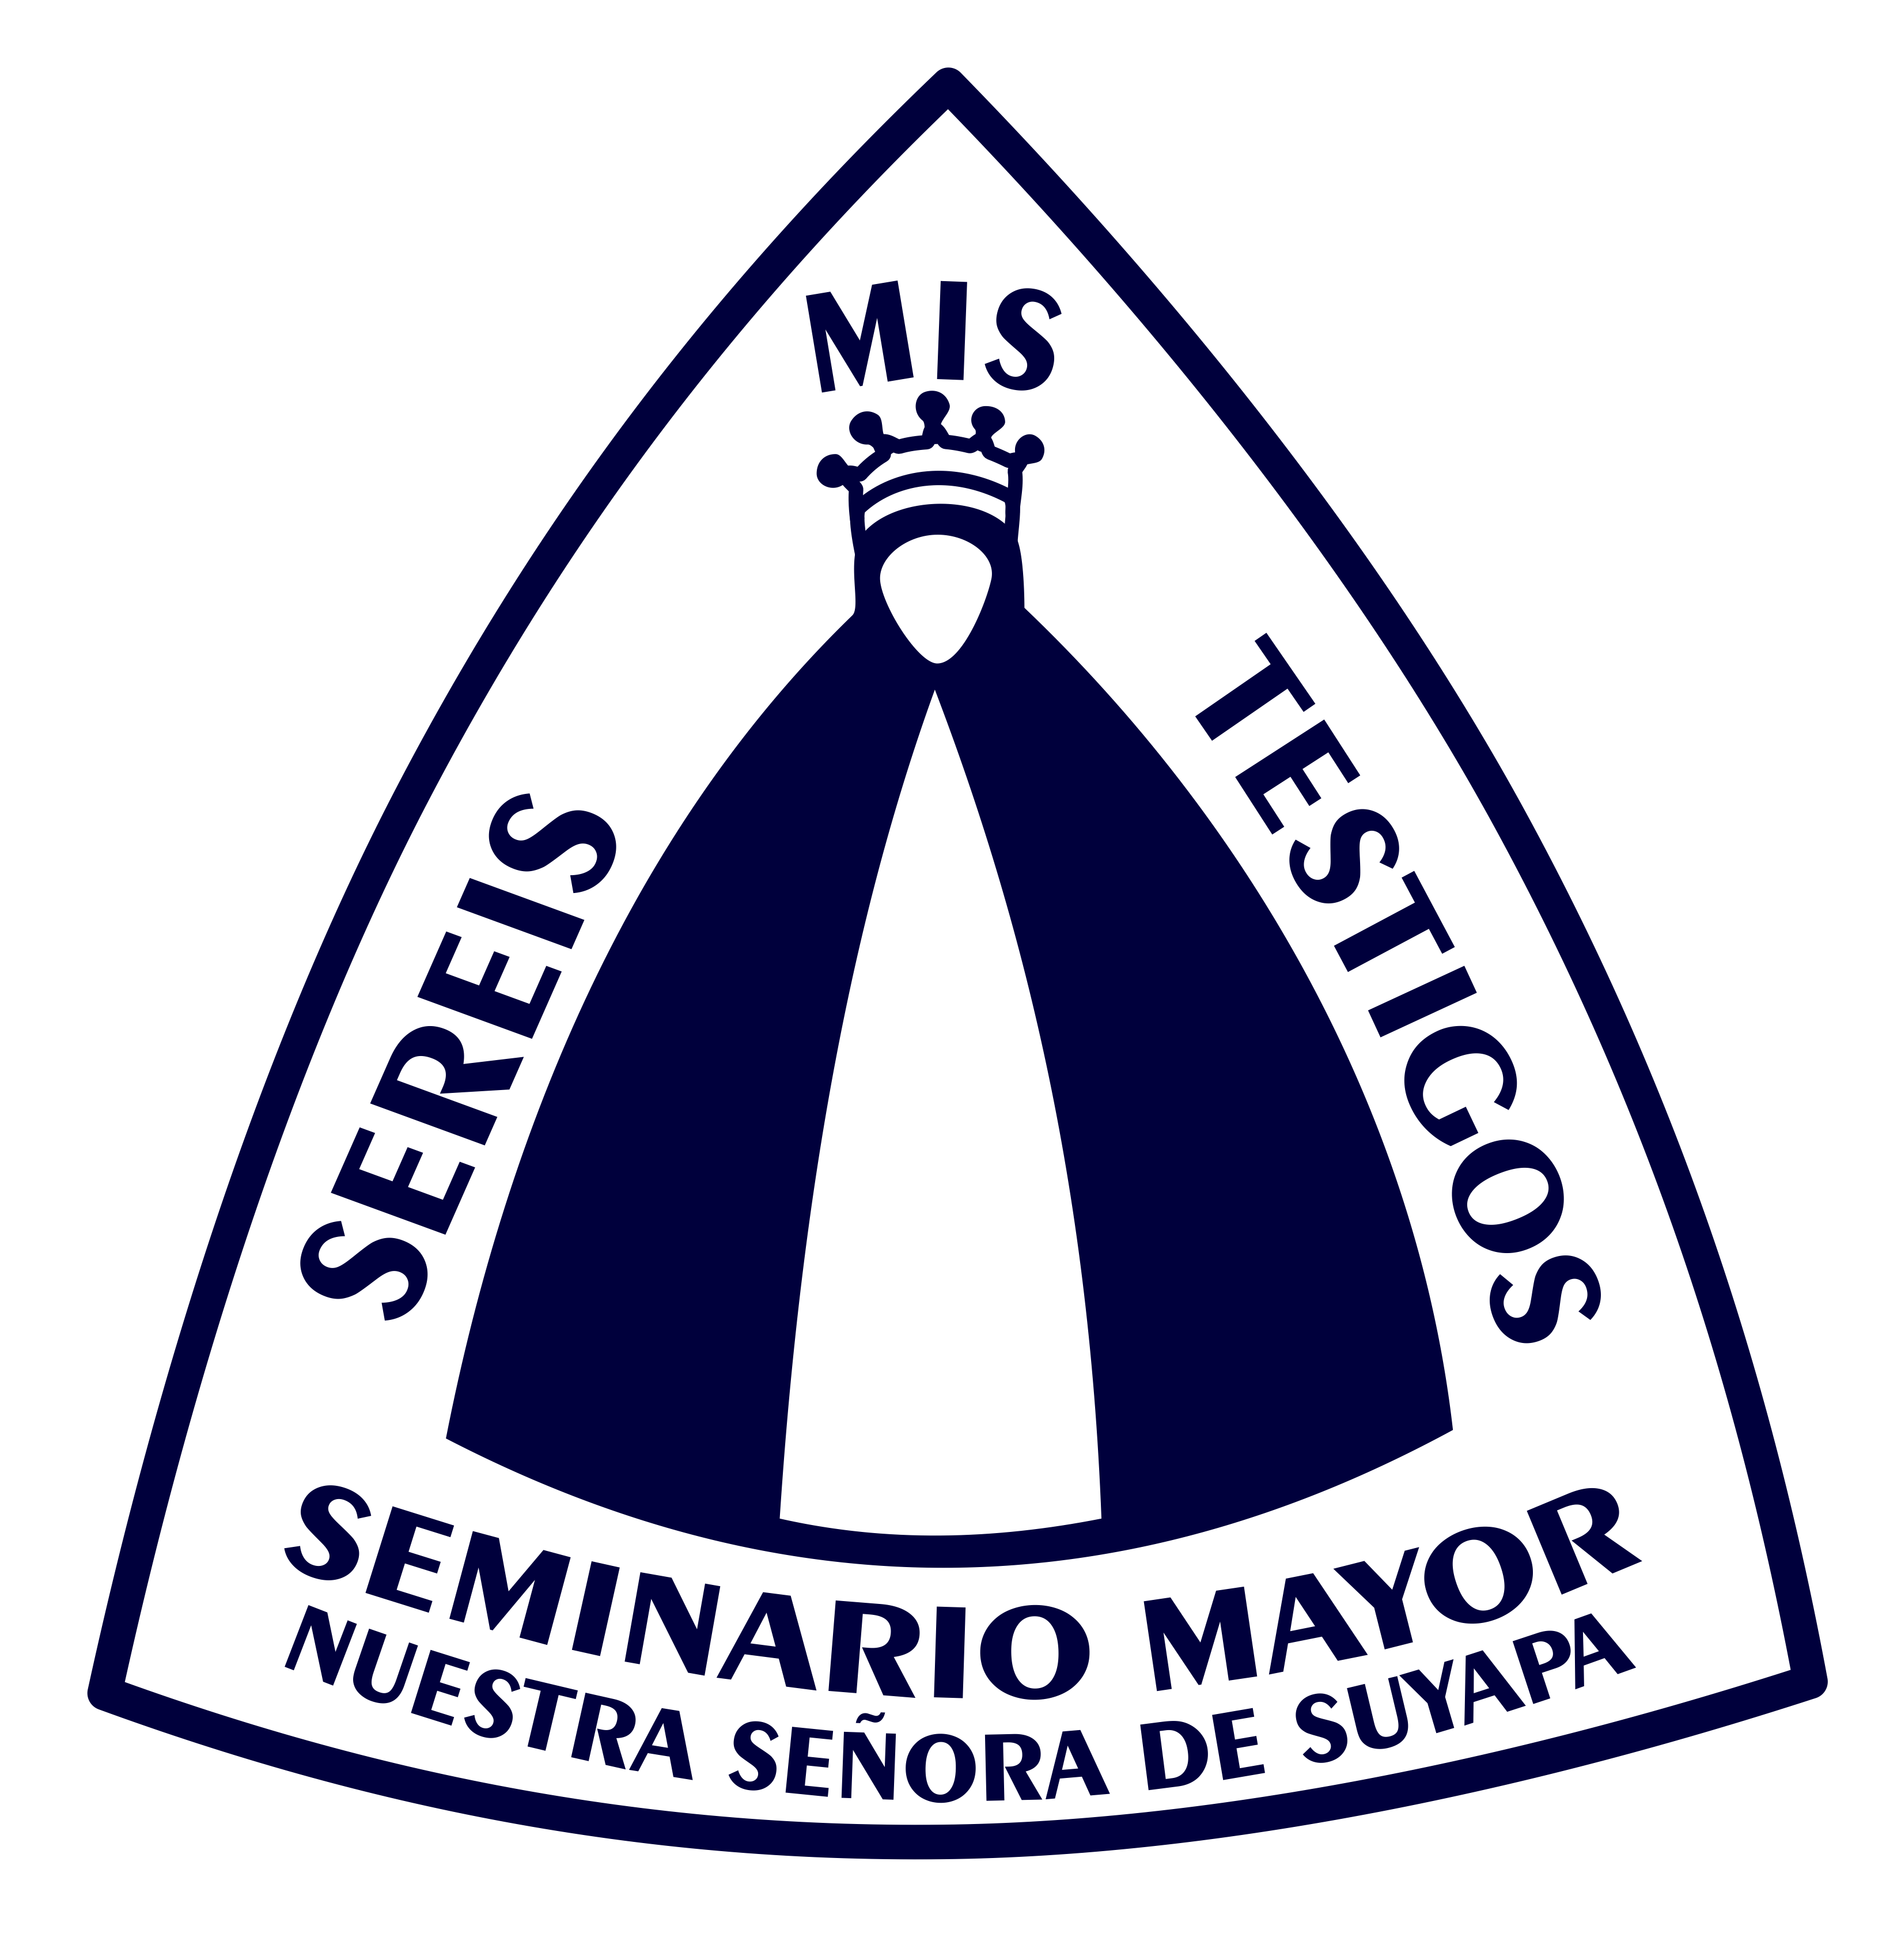 Seminario Mayor Nuestra Señora de Suyapa